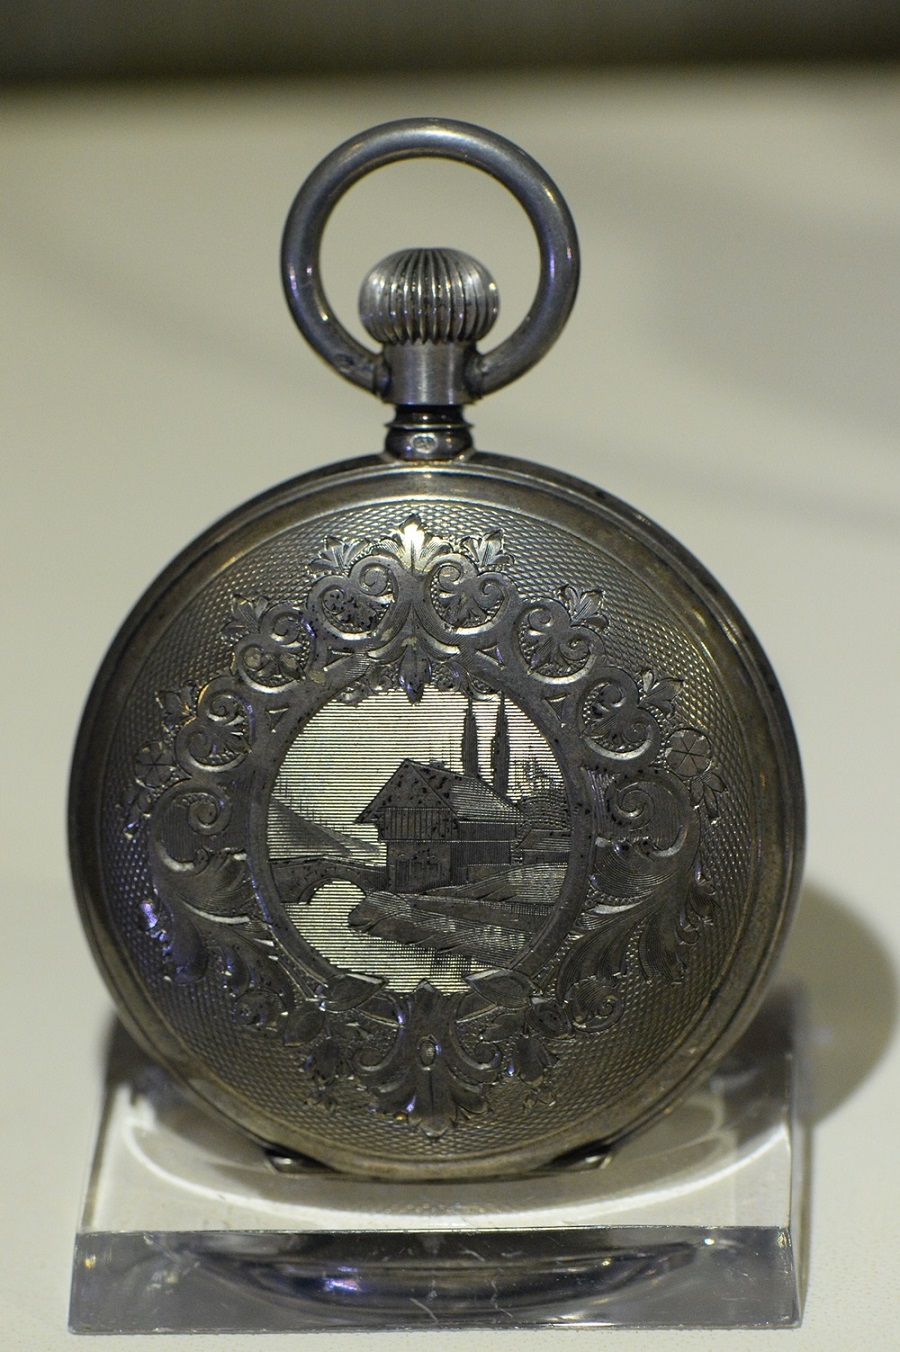 1. Hunter pocket watch นาฬกาพกทมการสลกเสลาและเพนตลายภาพทวทศนลงบนหนาปดอยางวจตรบรรจง ค.ศ. 1892S